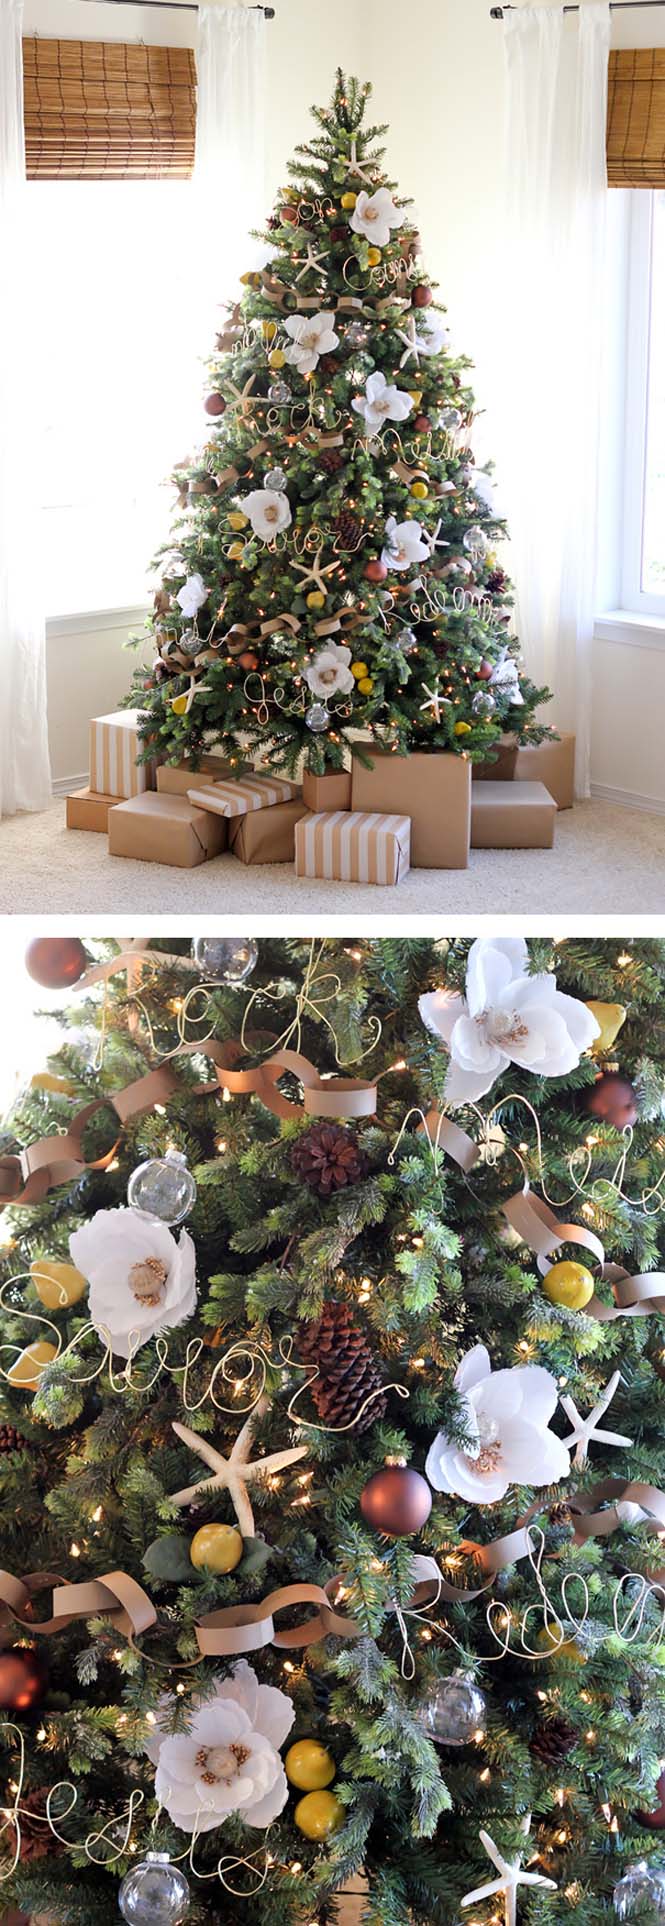 Στολισμοί χριστουγεννιάτικου δένδρου με λουλούδια (15)